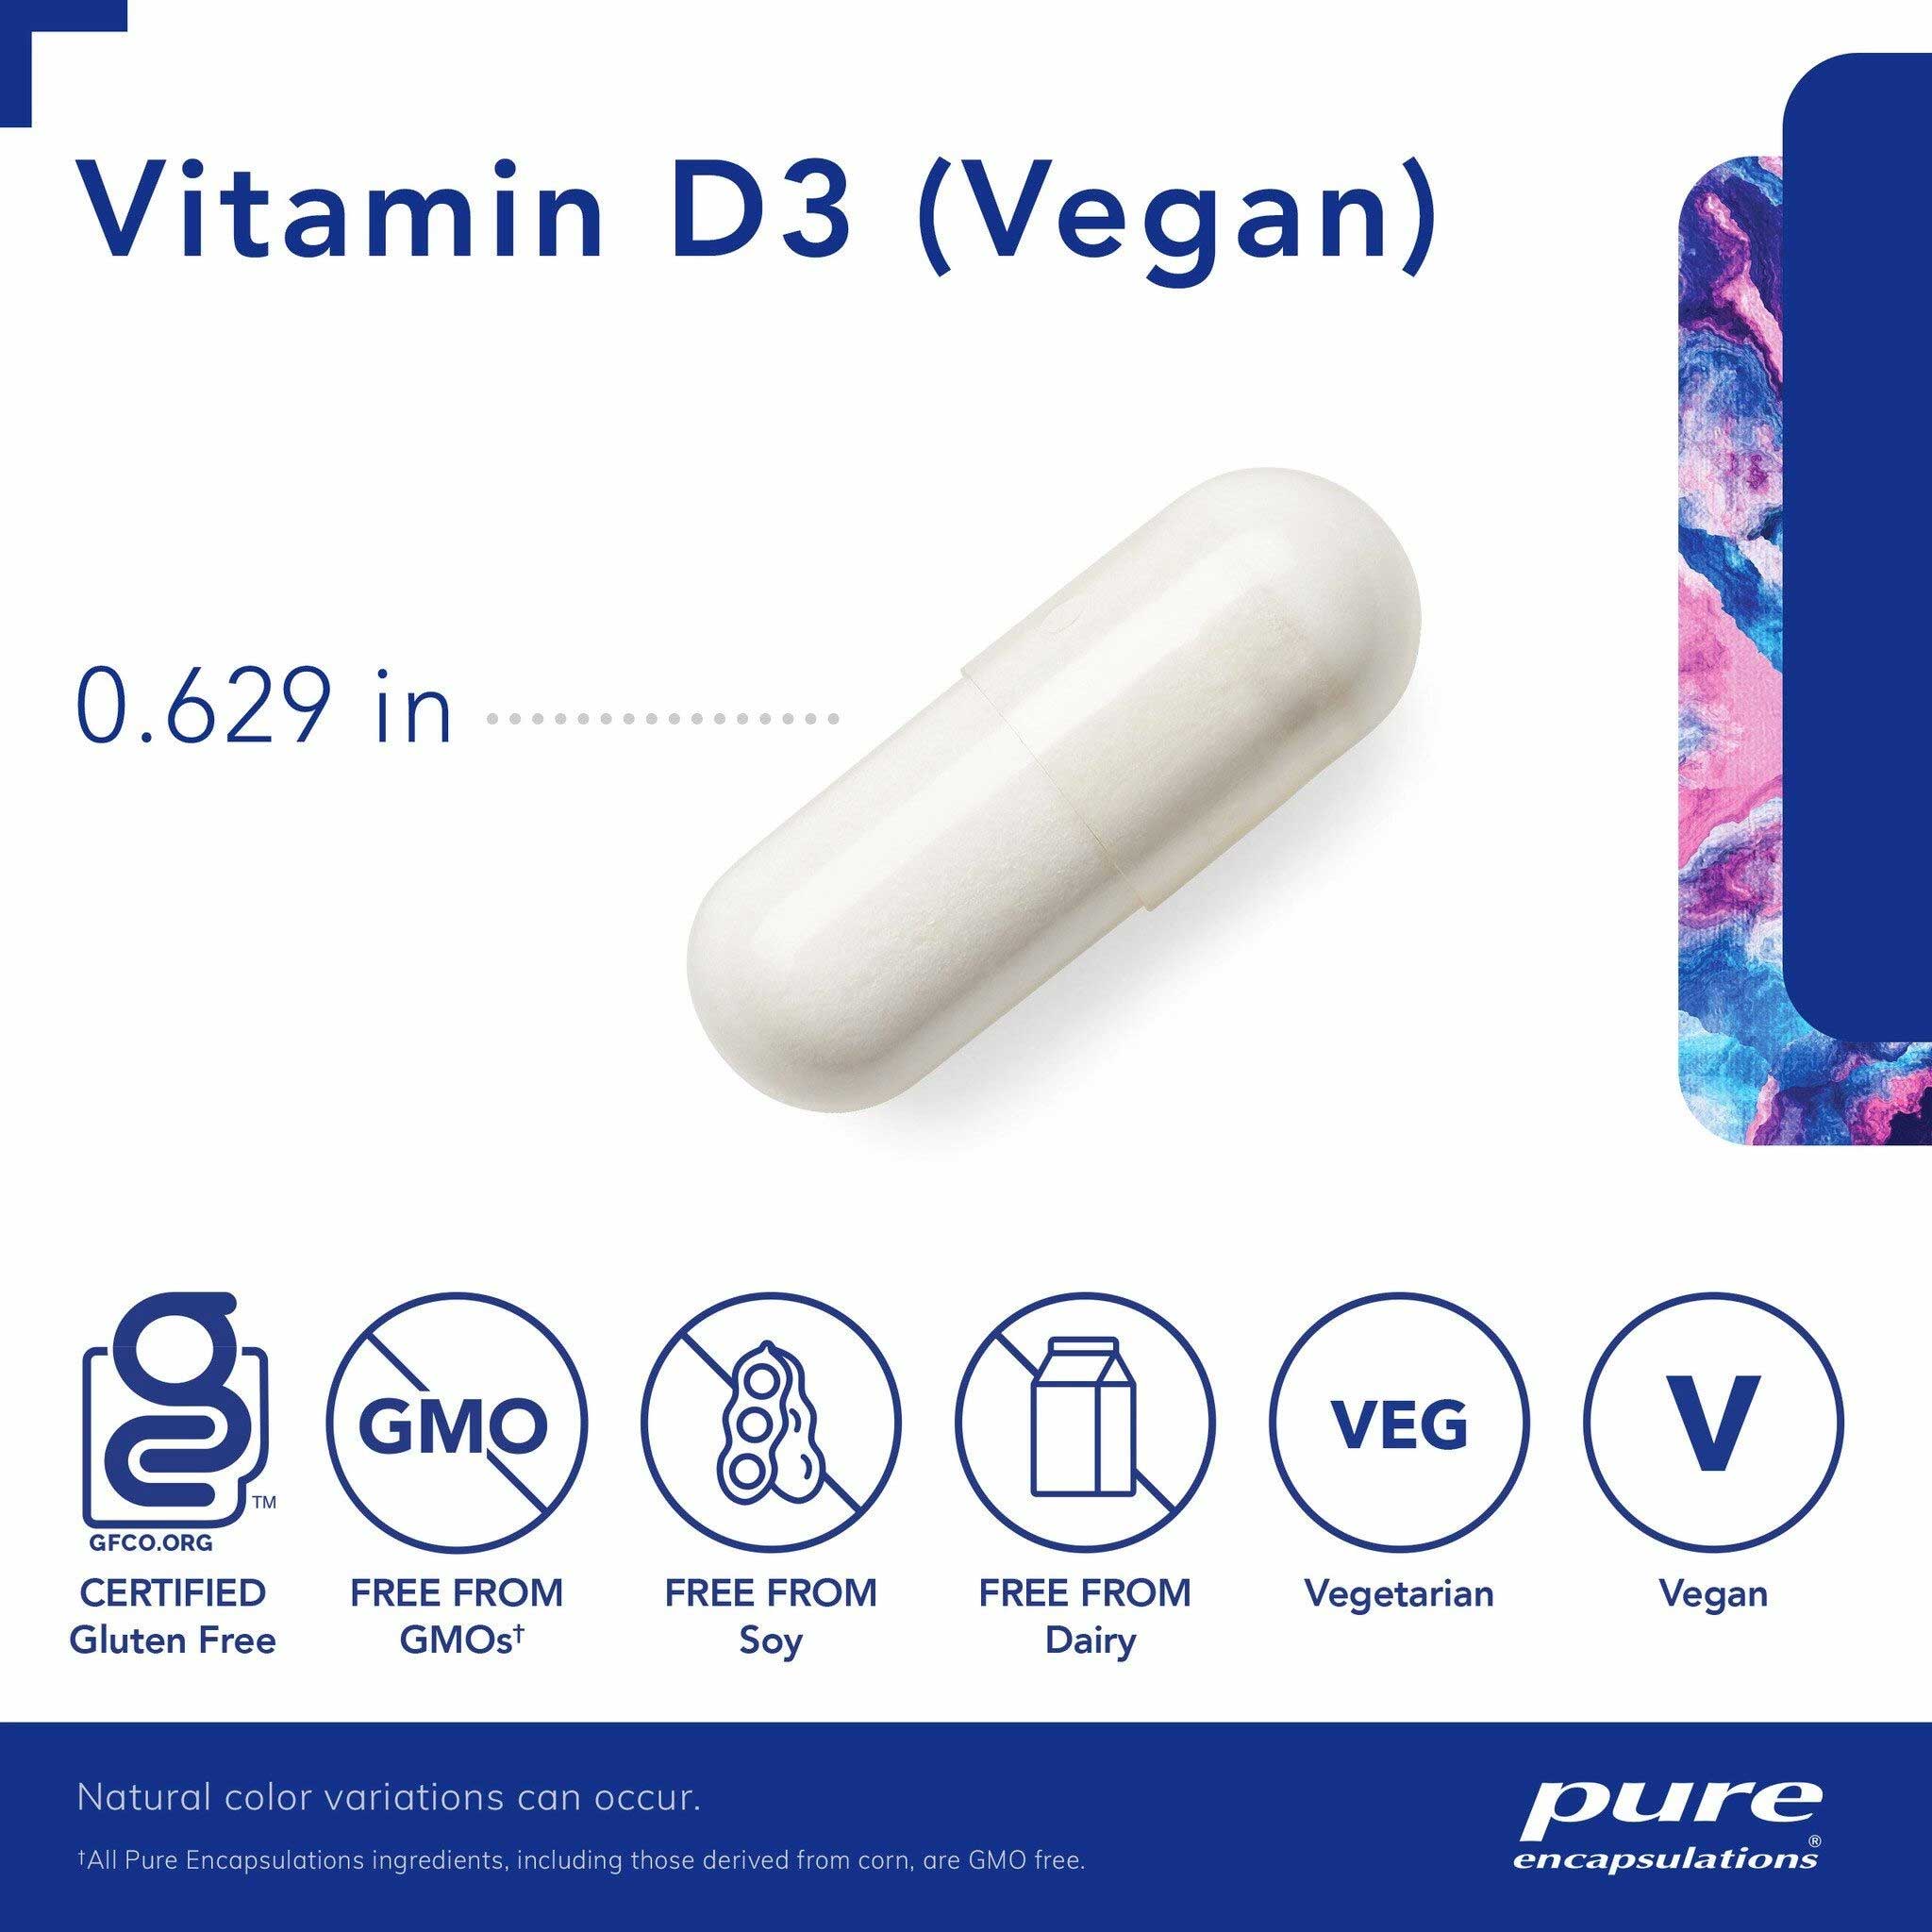 Pure Encapsulations Vitamin D3 (Vegan) Capsules